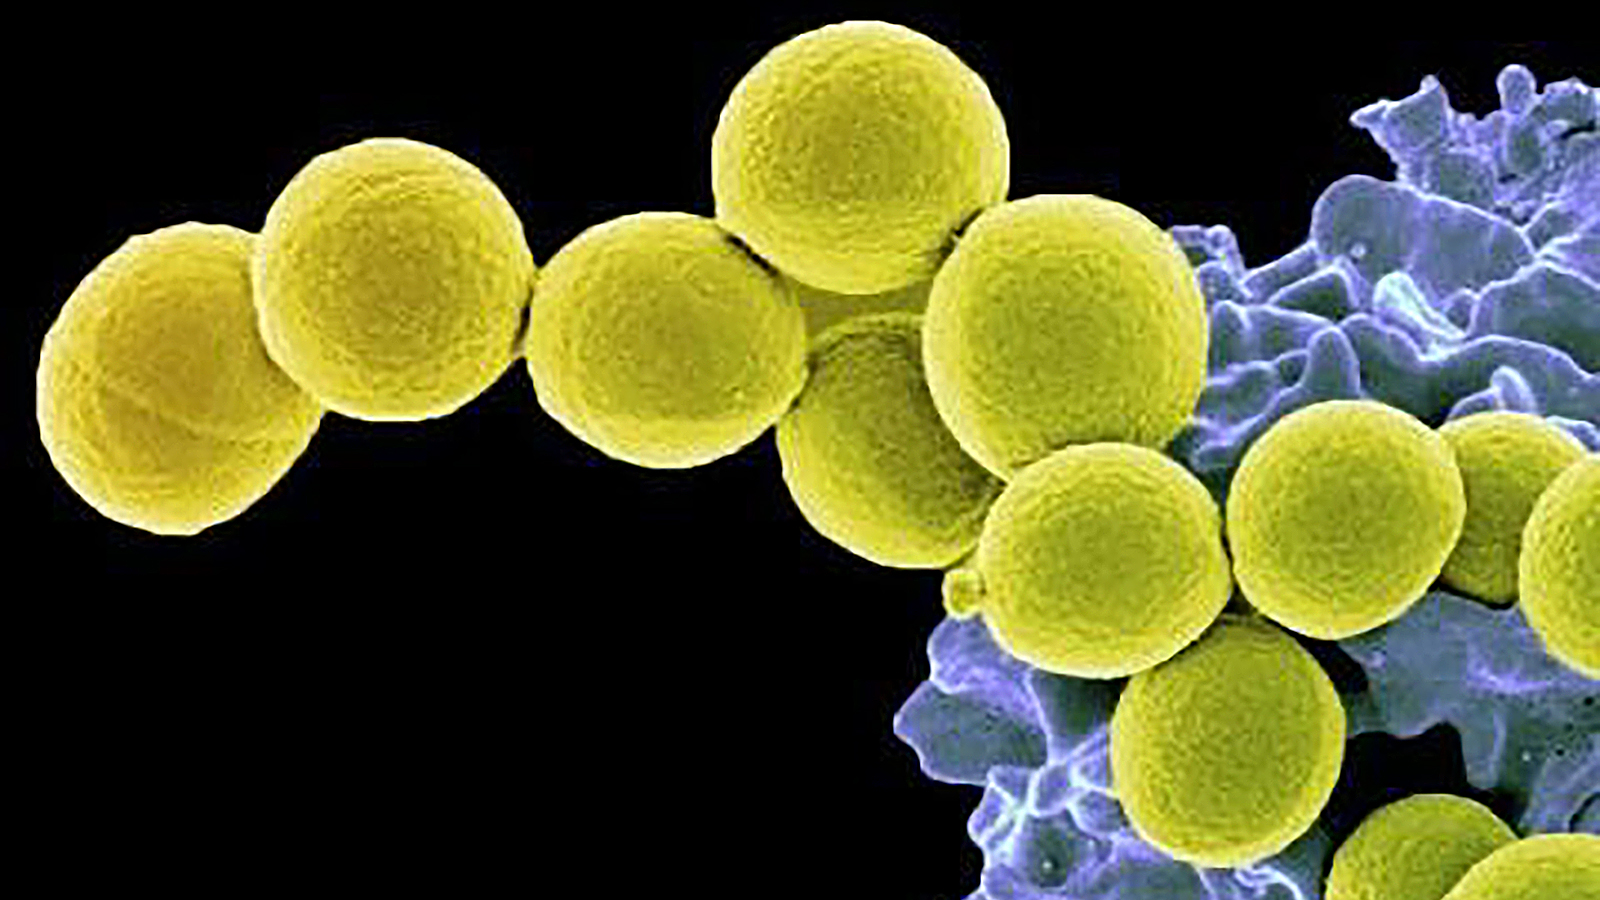 Staphylococcus aureus 4